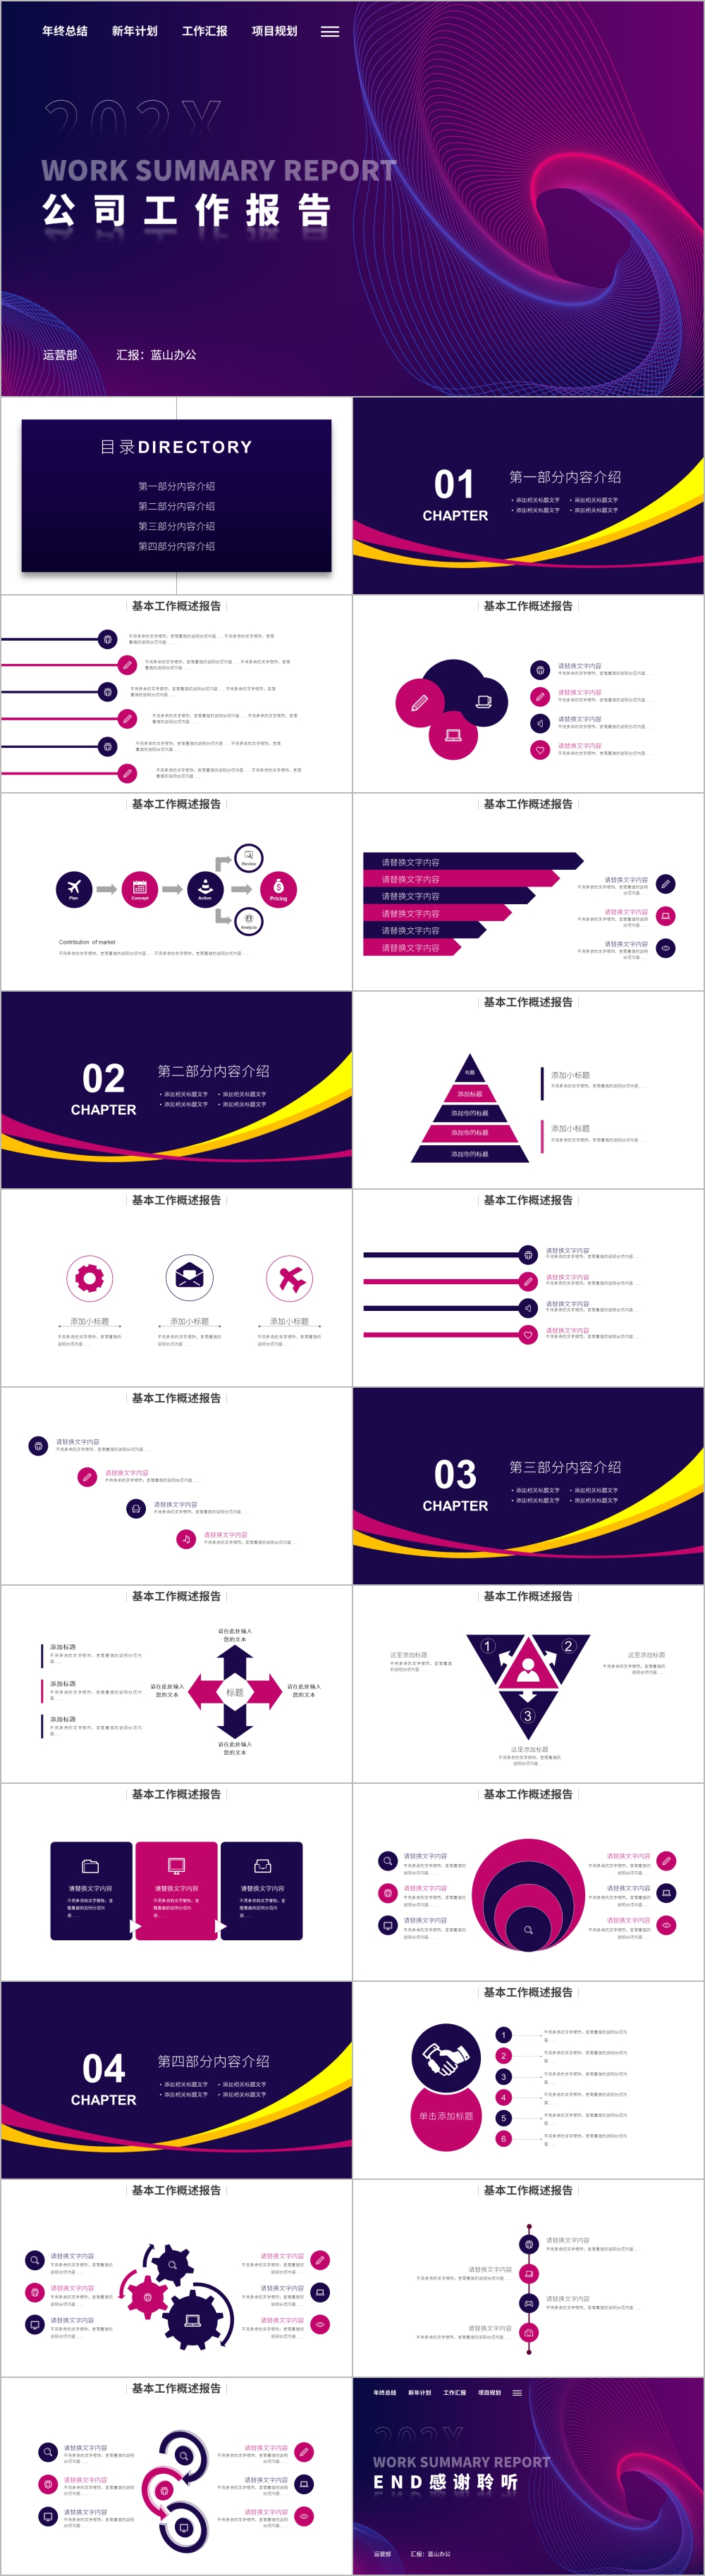 紫色创意背景公司工作报告PPT模板